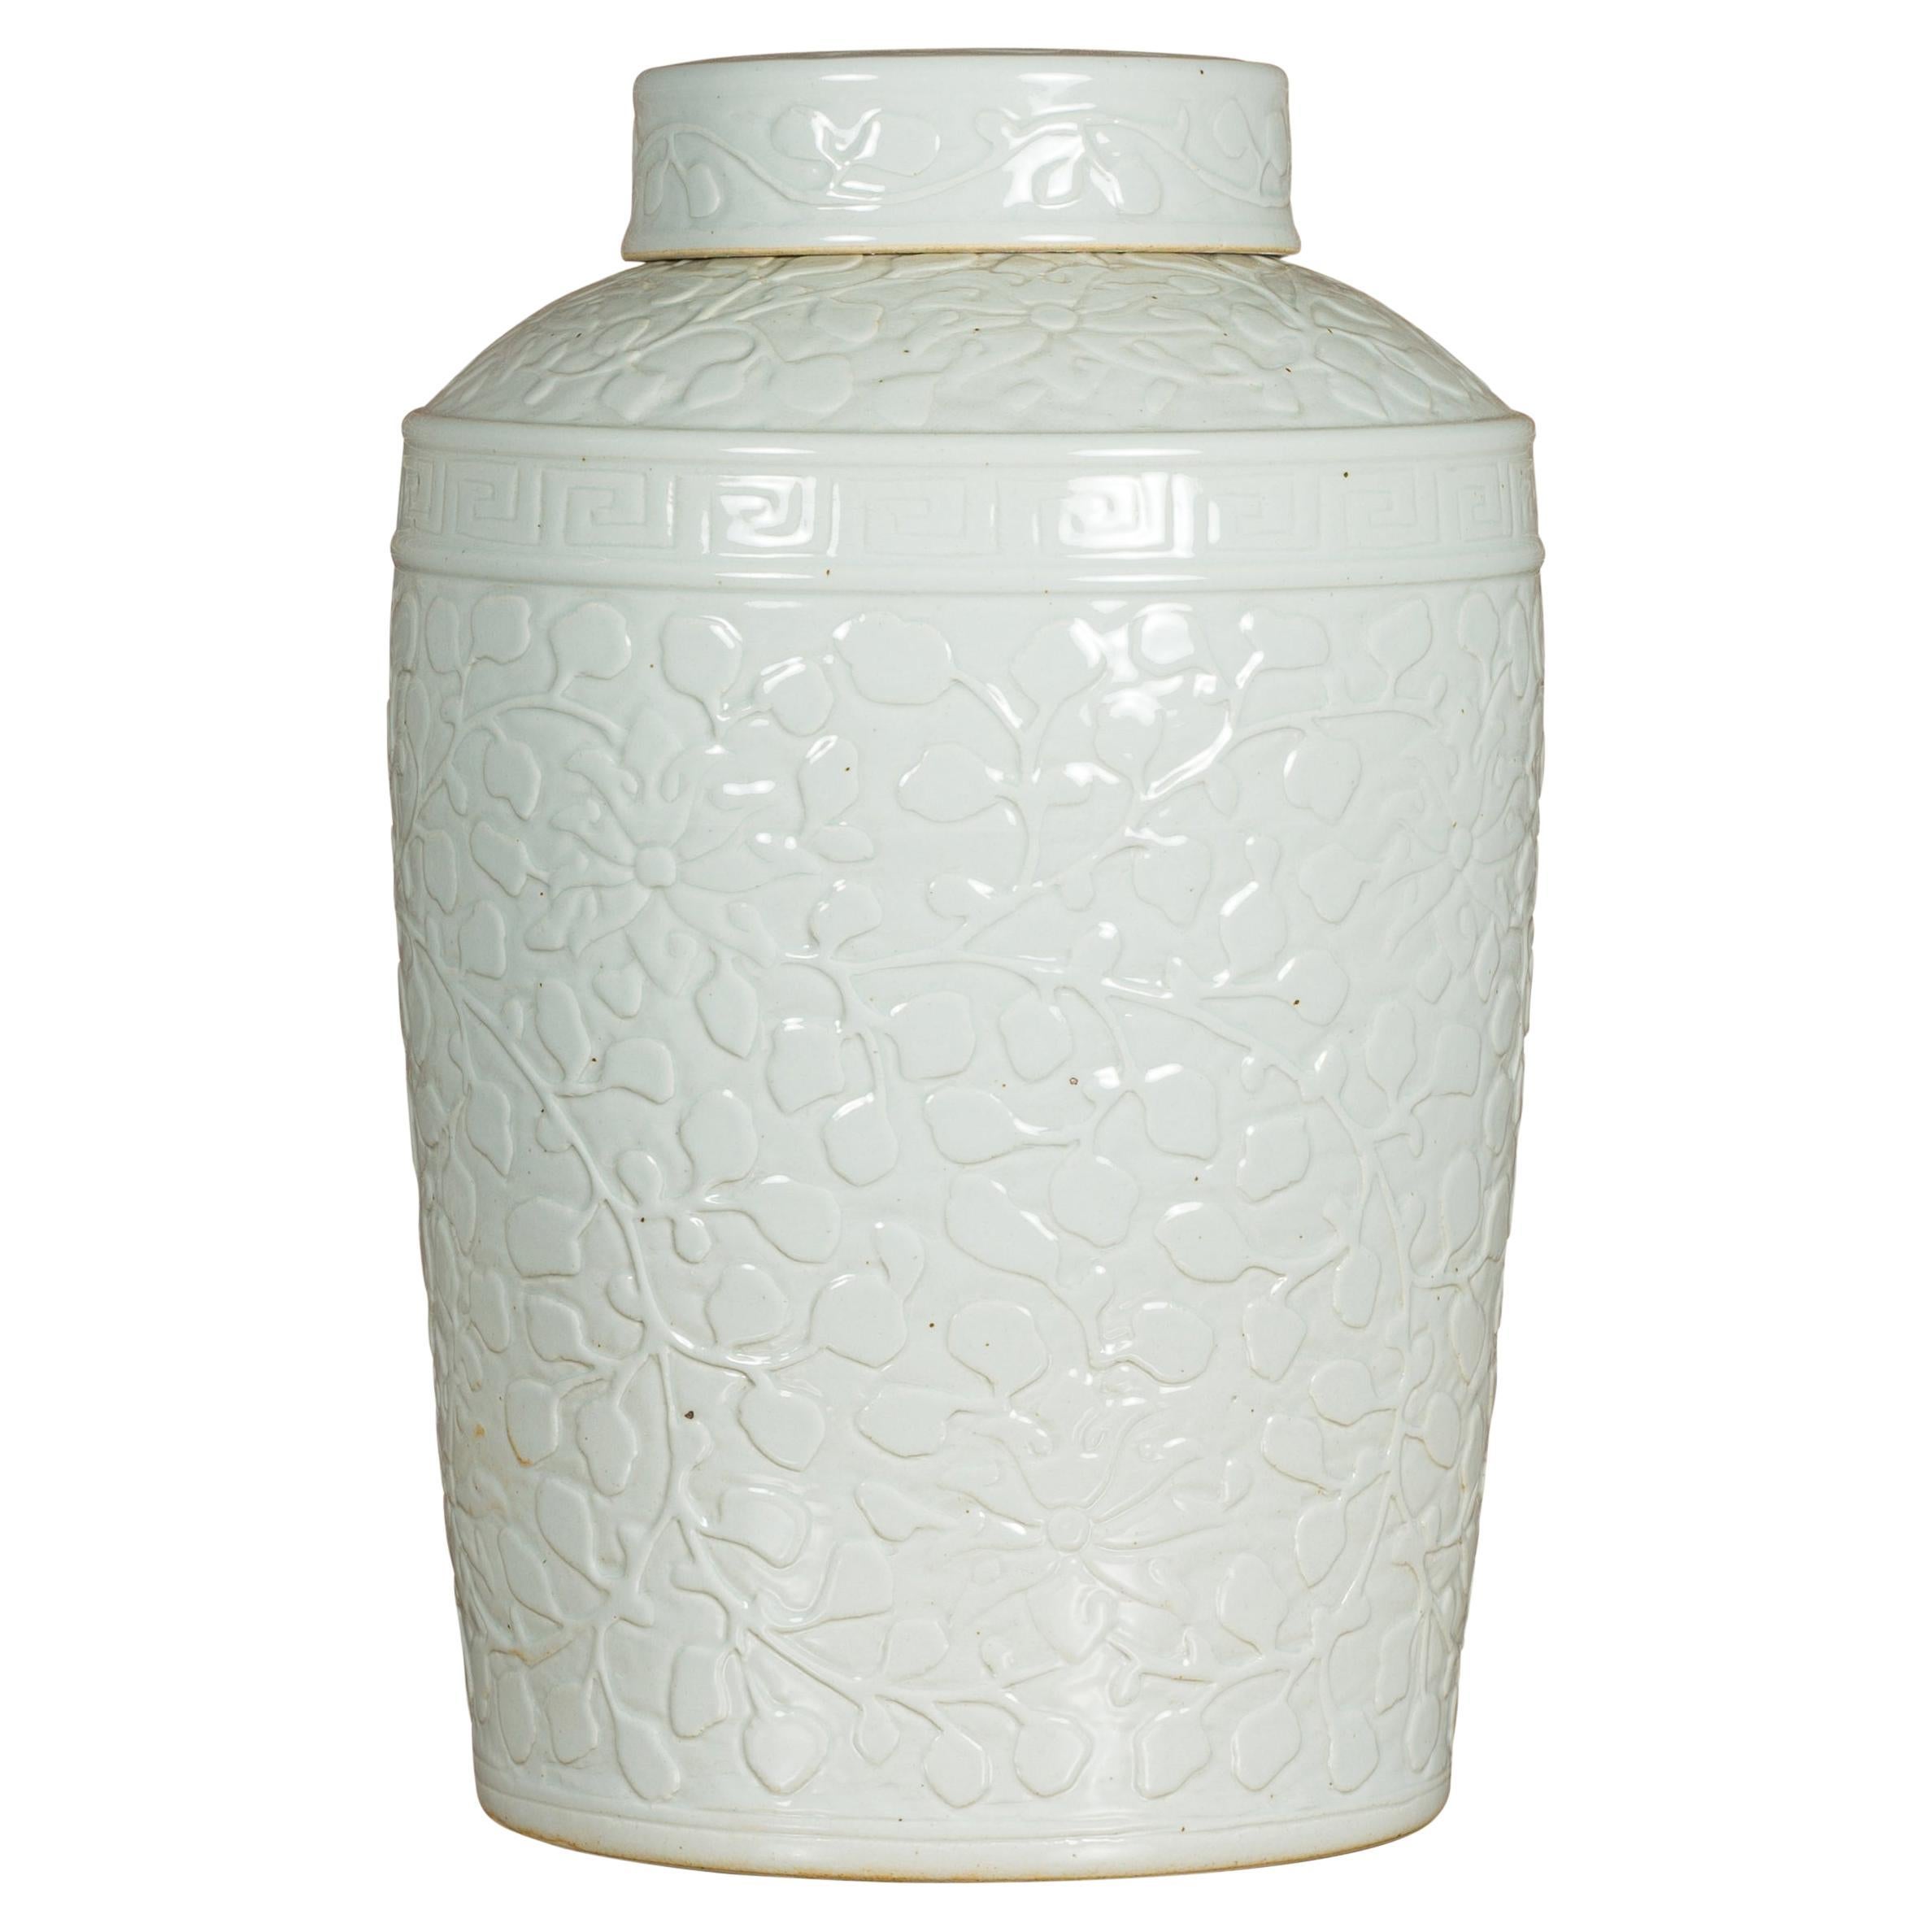 Asiatisches JAR aus weißem Porzellan mit Deckel und Blattwerkmotiven